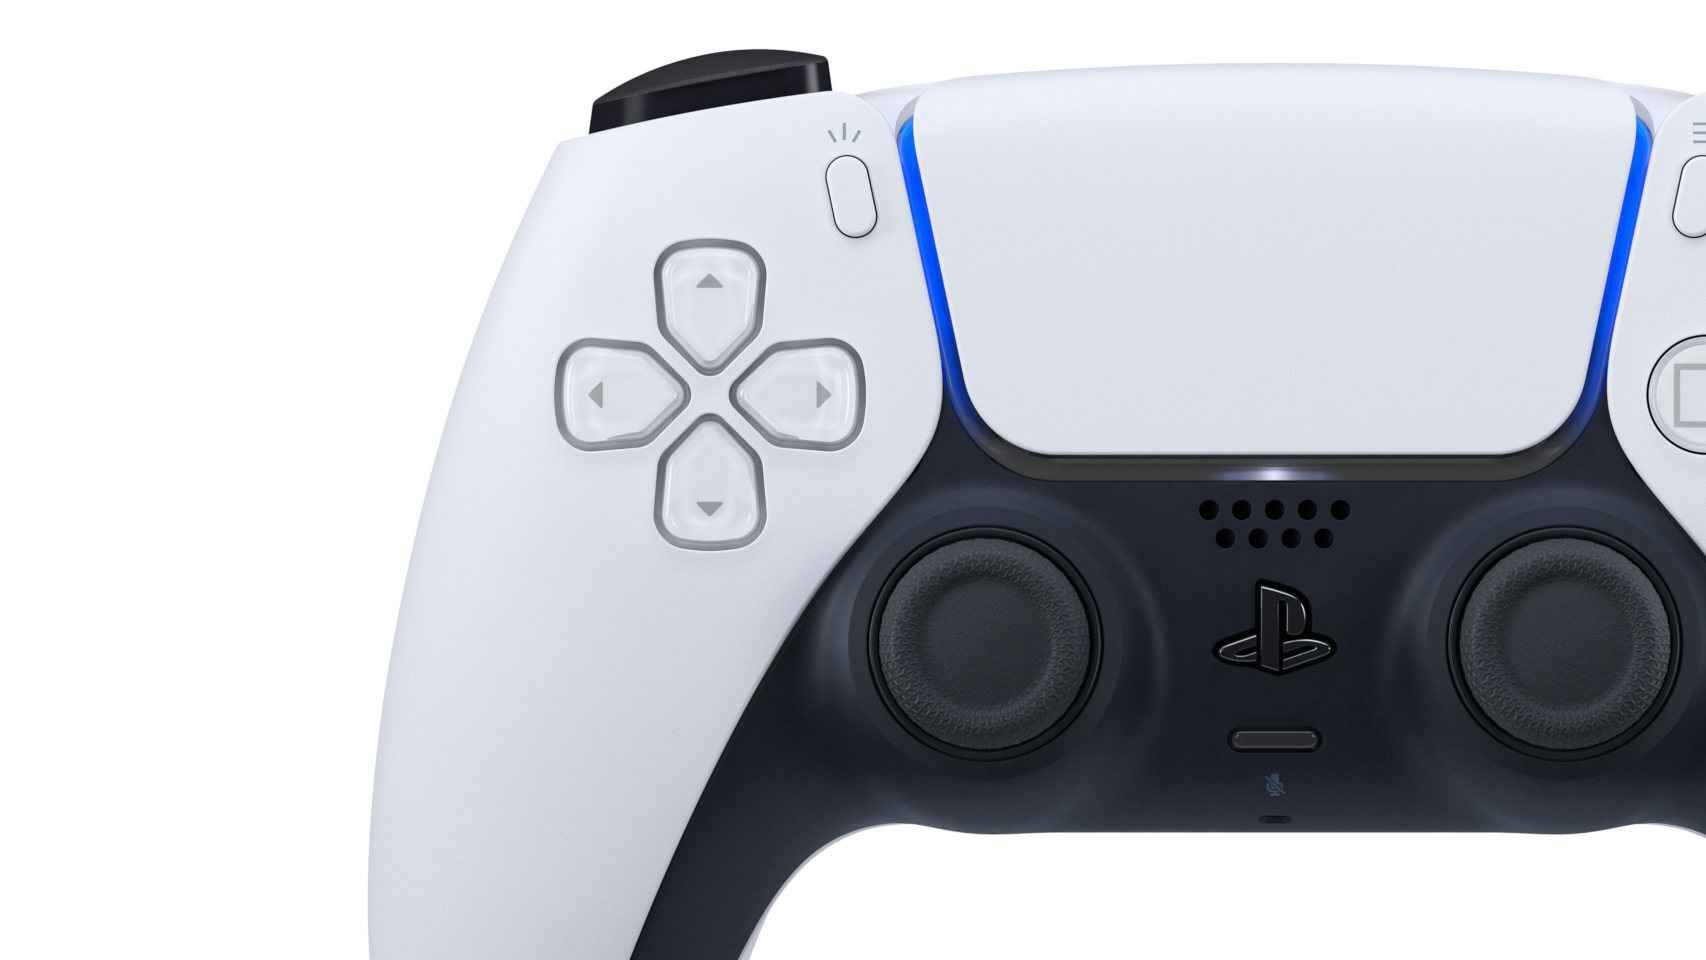 El nuevo mando de la Playstation 5 tiene un diseño espectacular.